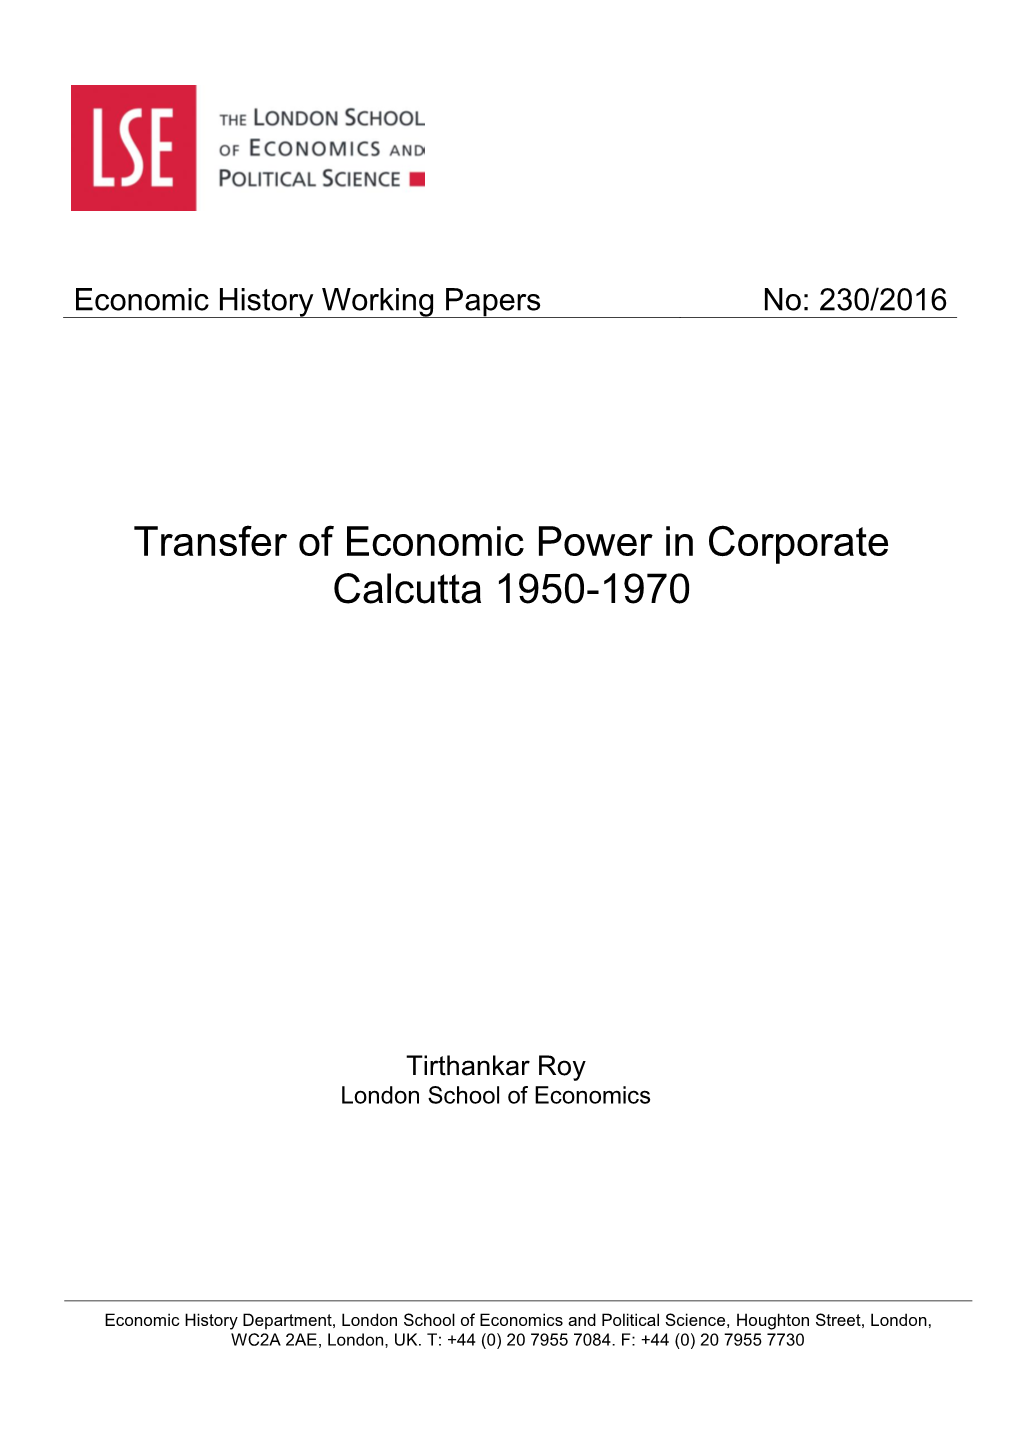 Transfer of Economic Power in Corporate Calcutta 1950-1970